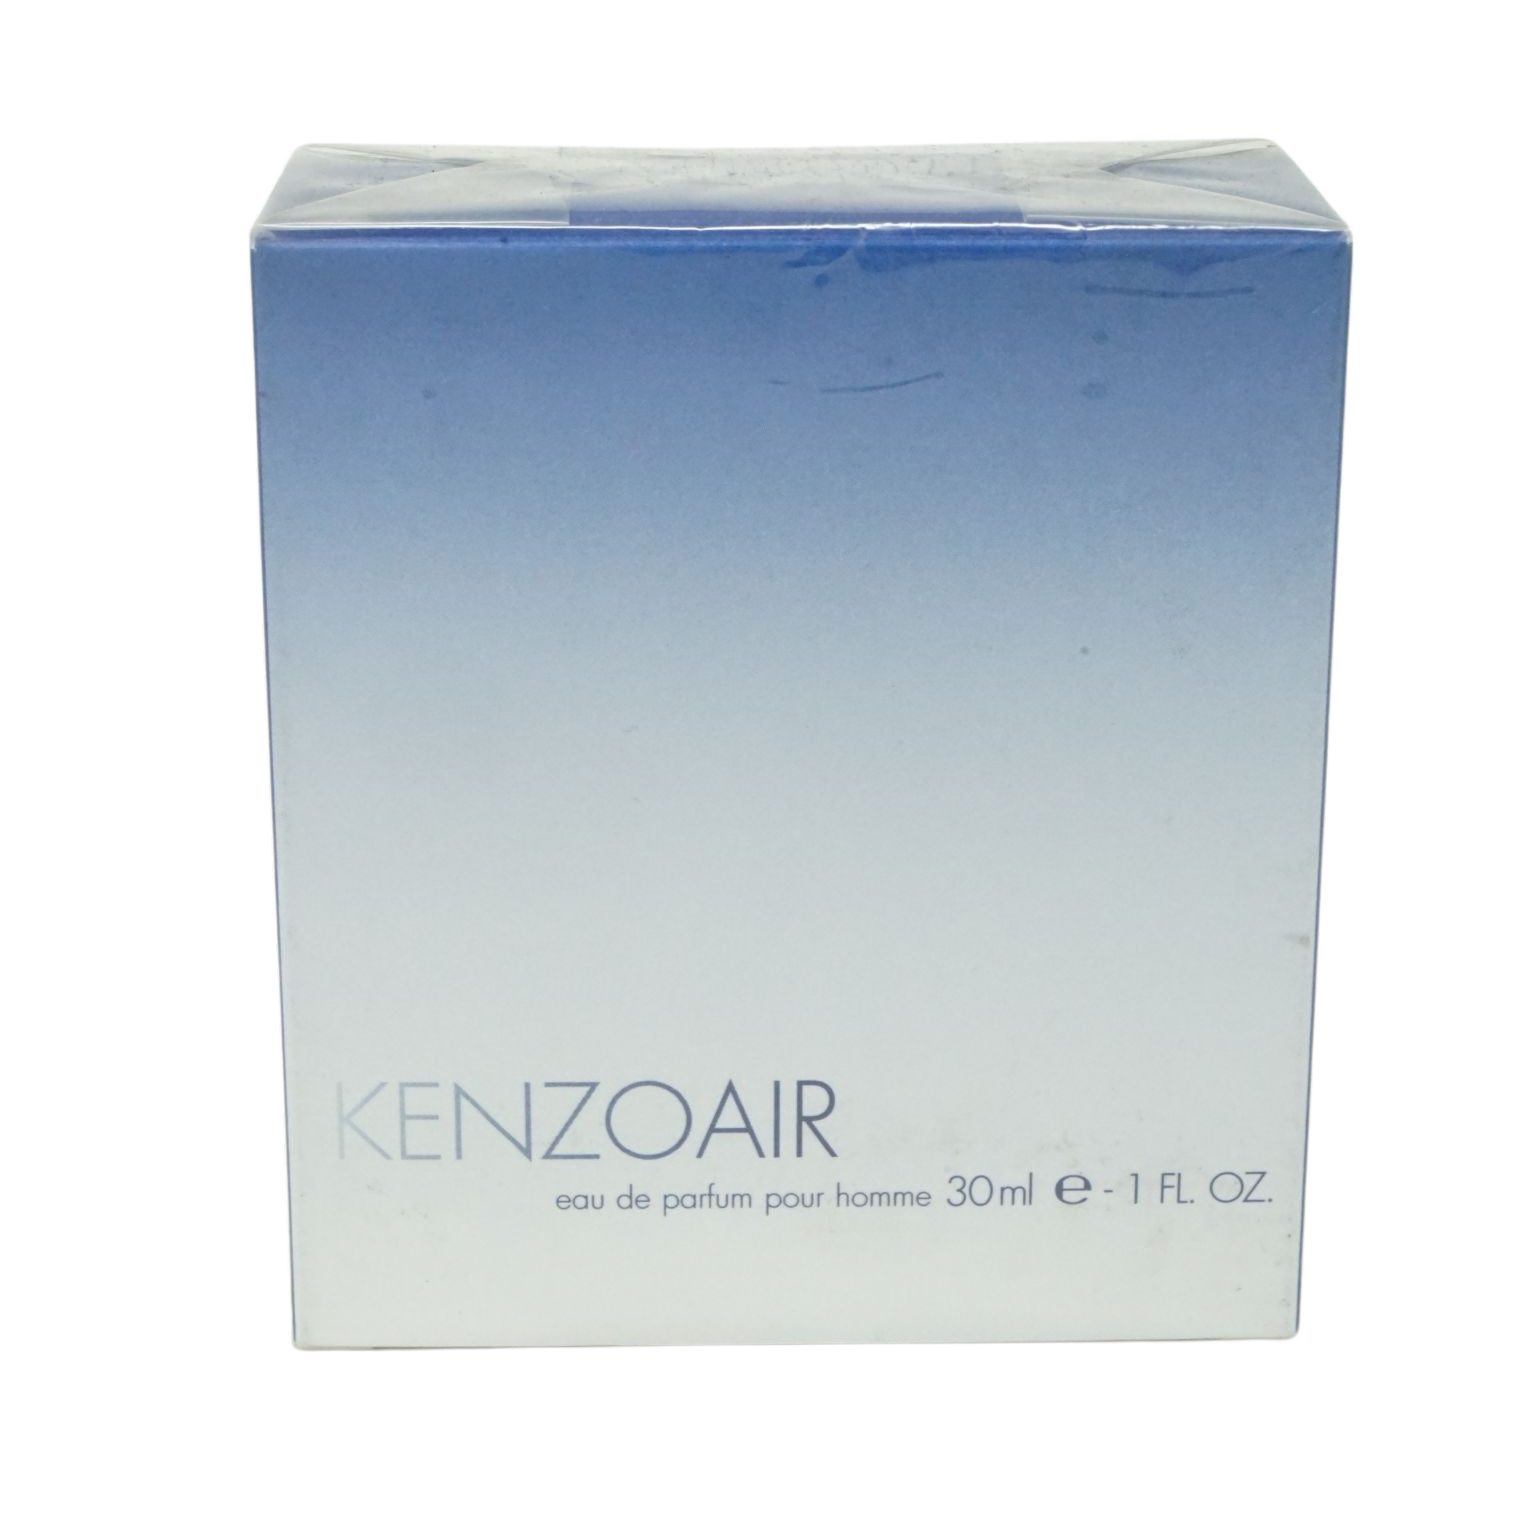 KENZO Eau de Parfum Kenzo Air Eau de Parfum pour homme 30ml